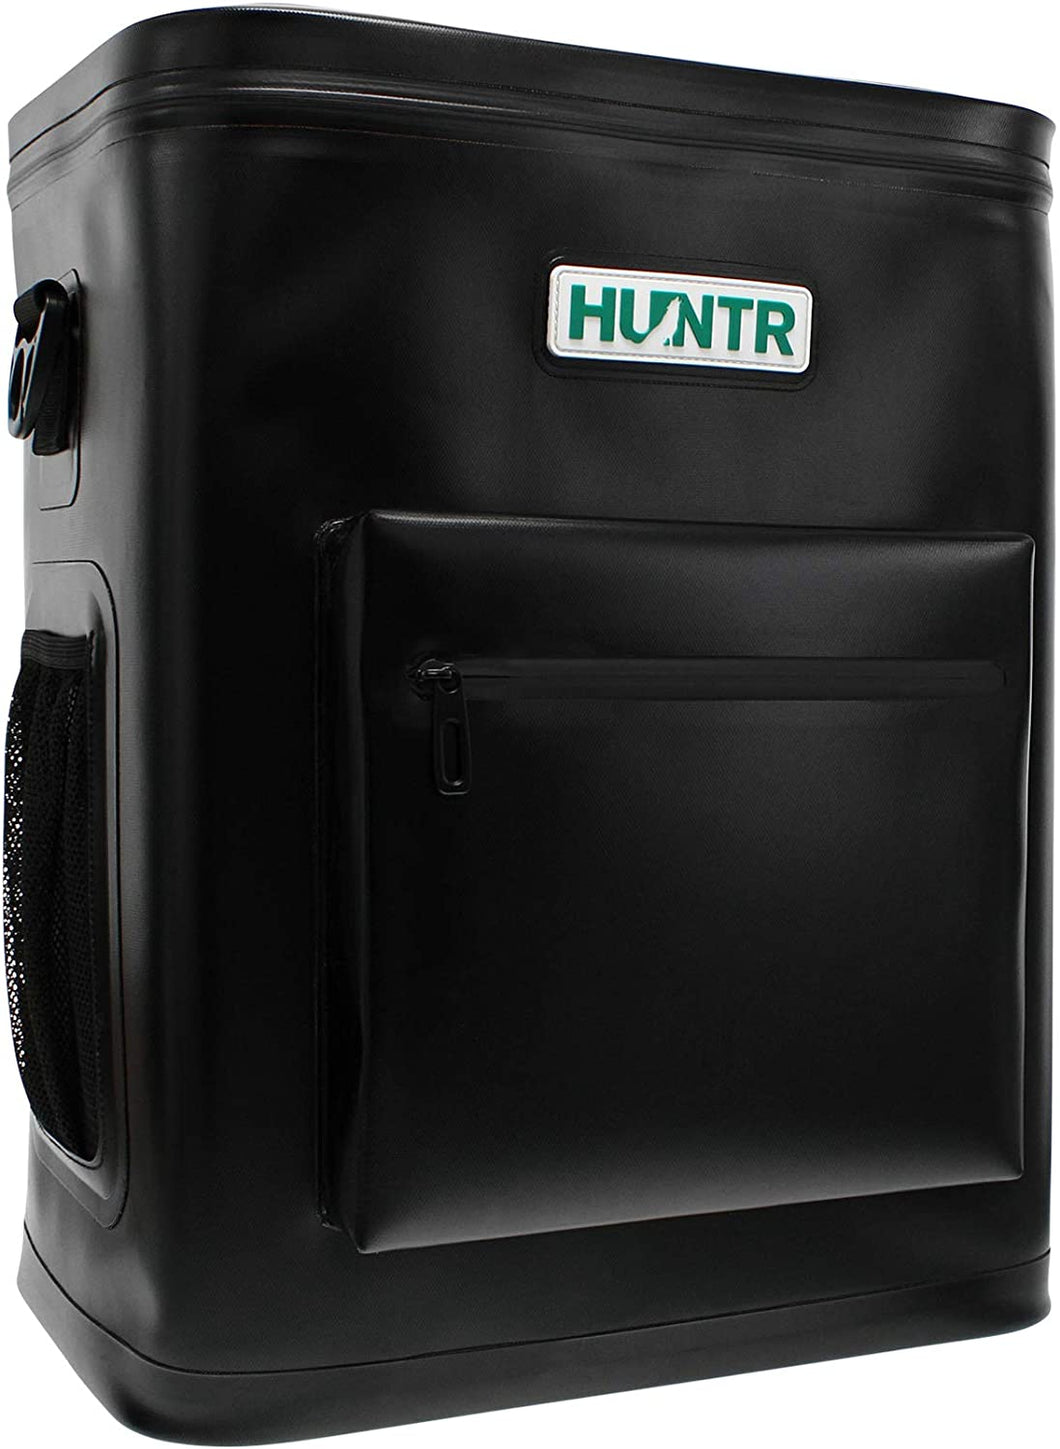 HUNTR Cooler Backpack